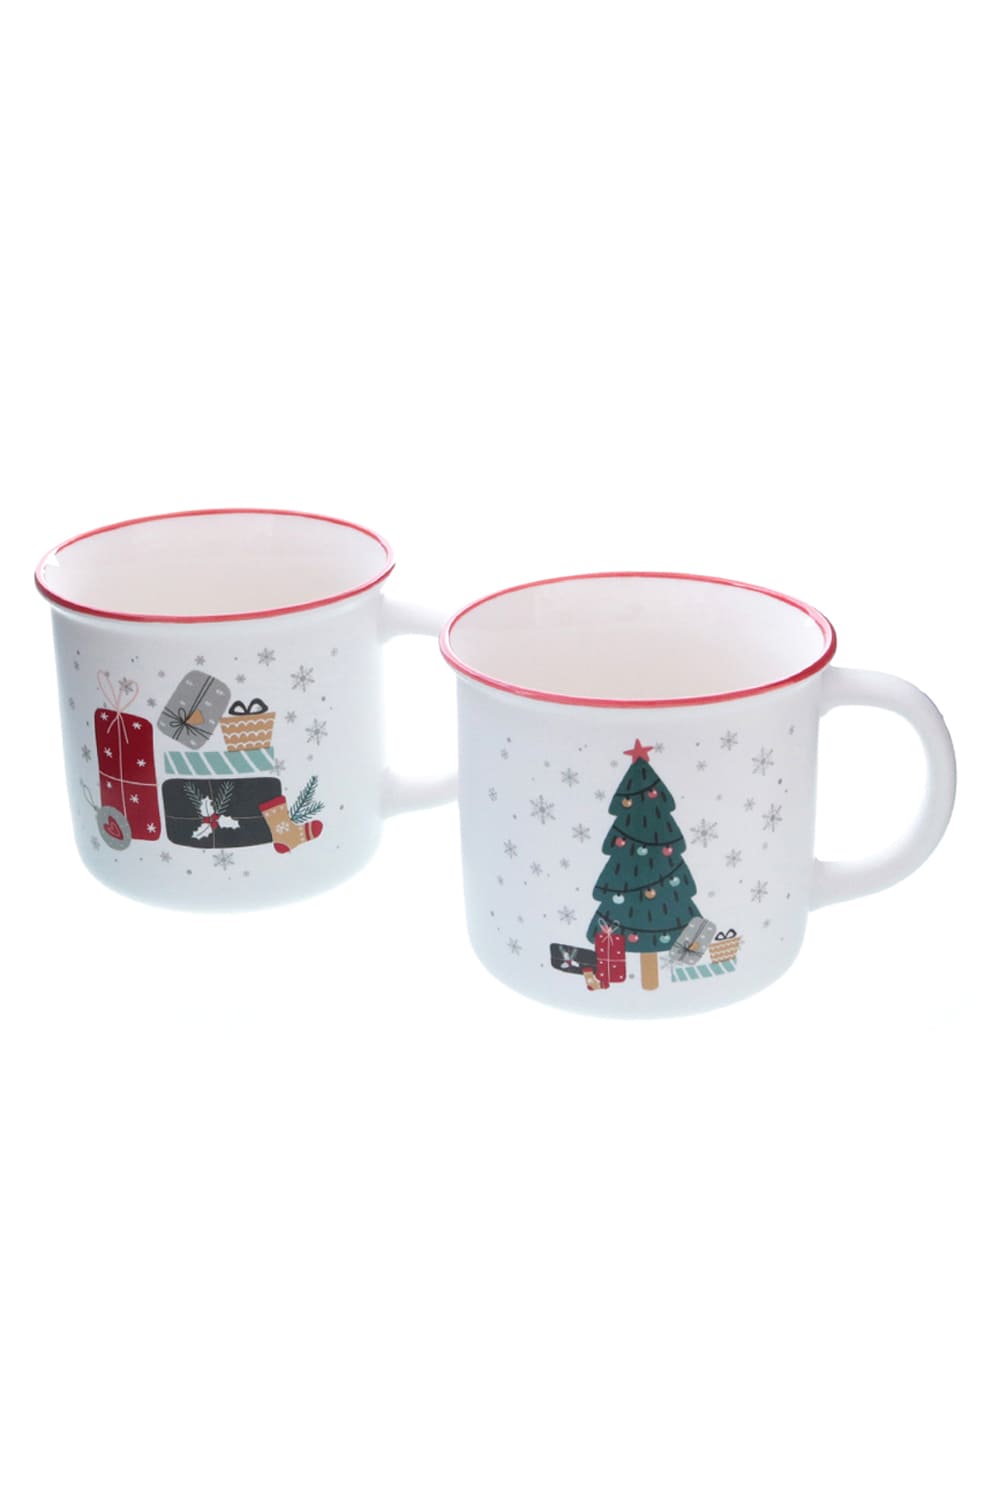 Diese weihnachtliche Tasse ist perfekt fuer alle, die gerne Kaffee, Tee oder Ovomaltine trinken. Es gibt die Tasse in zwei diversen Motiven: Geschenke & Weihnachtsbaum. Die Weihnachtstasse kann beliebig mit anderen Geschenken kombiniert werden oder mit Suessigkeiten, wie Schokolade oder Pralinen gefuellt werden.  